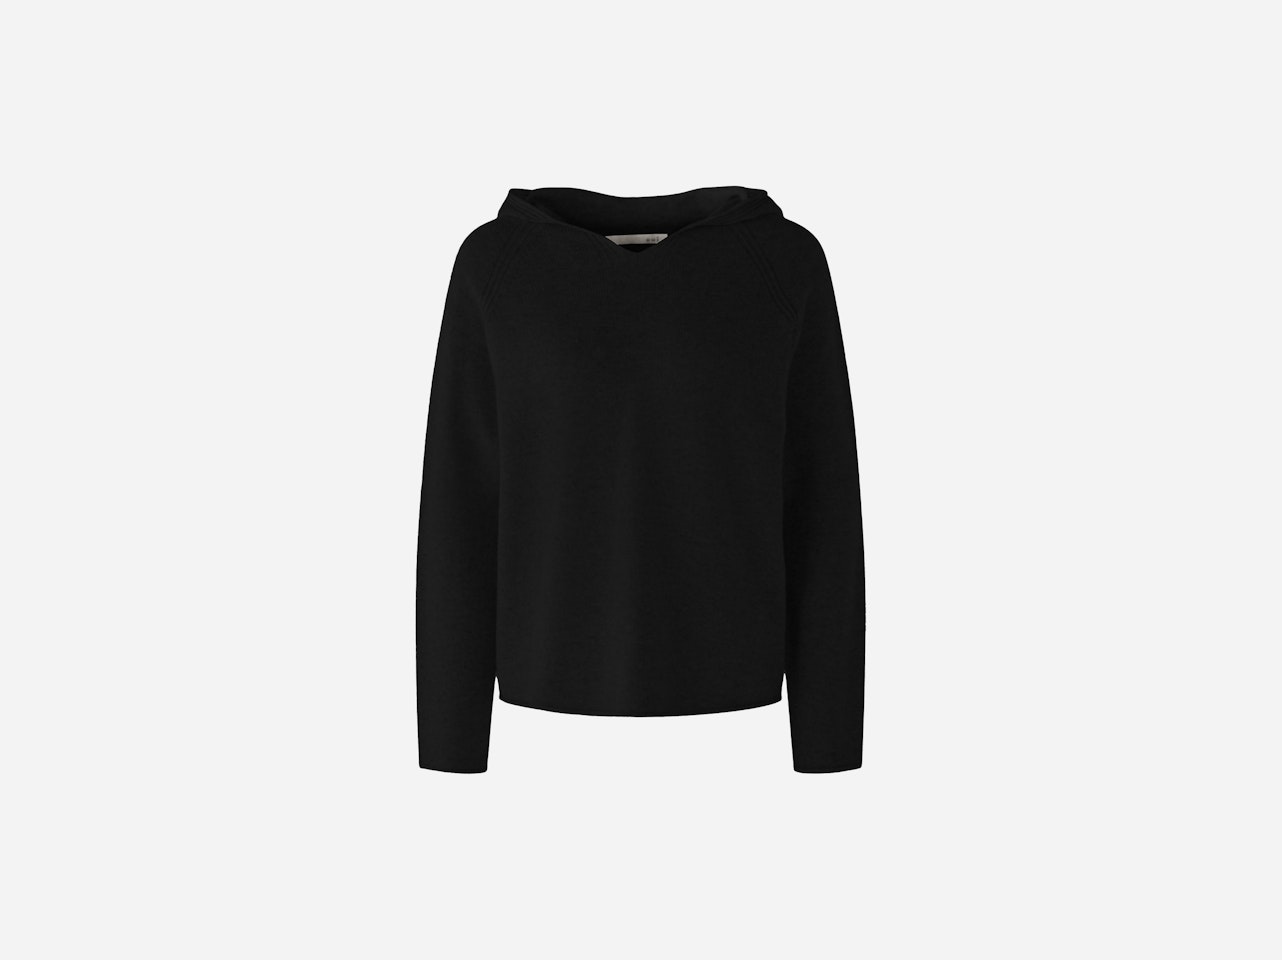 Bild 1 von Knitted jumper with hood in black | Oui